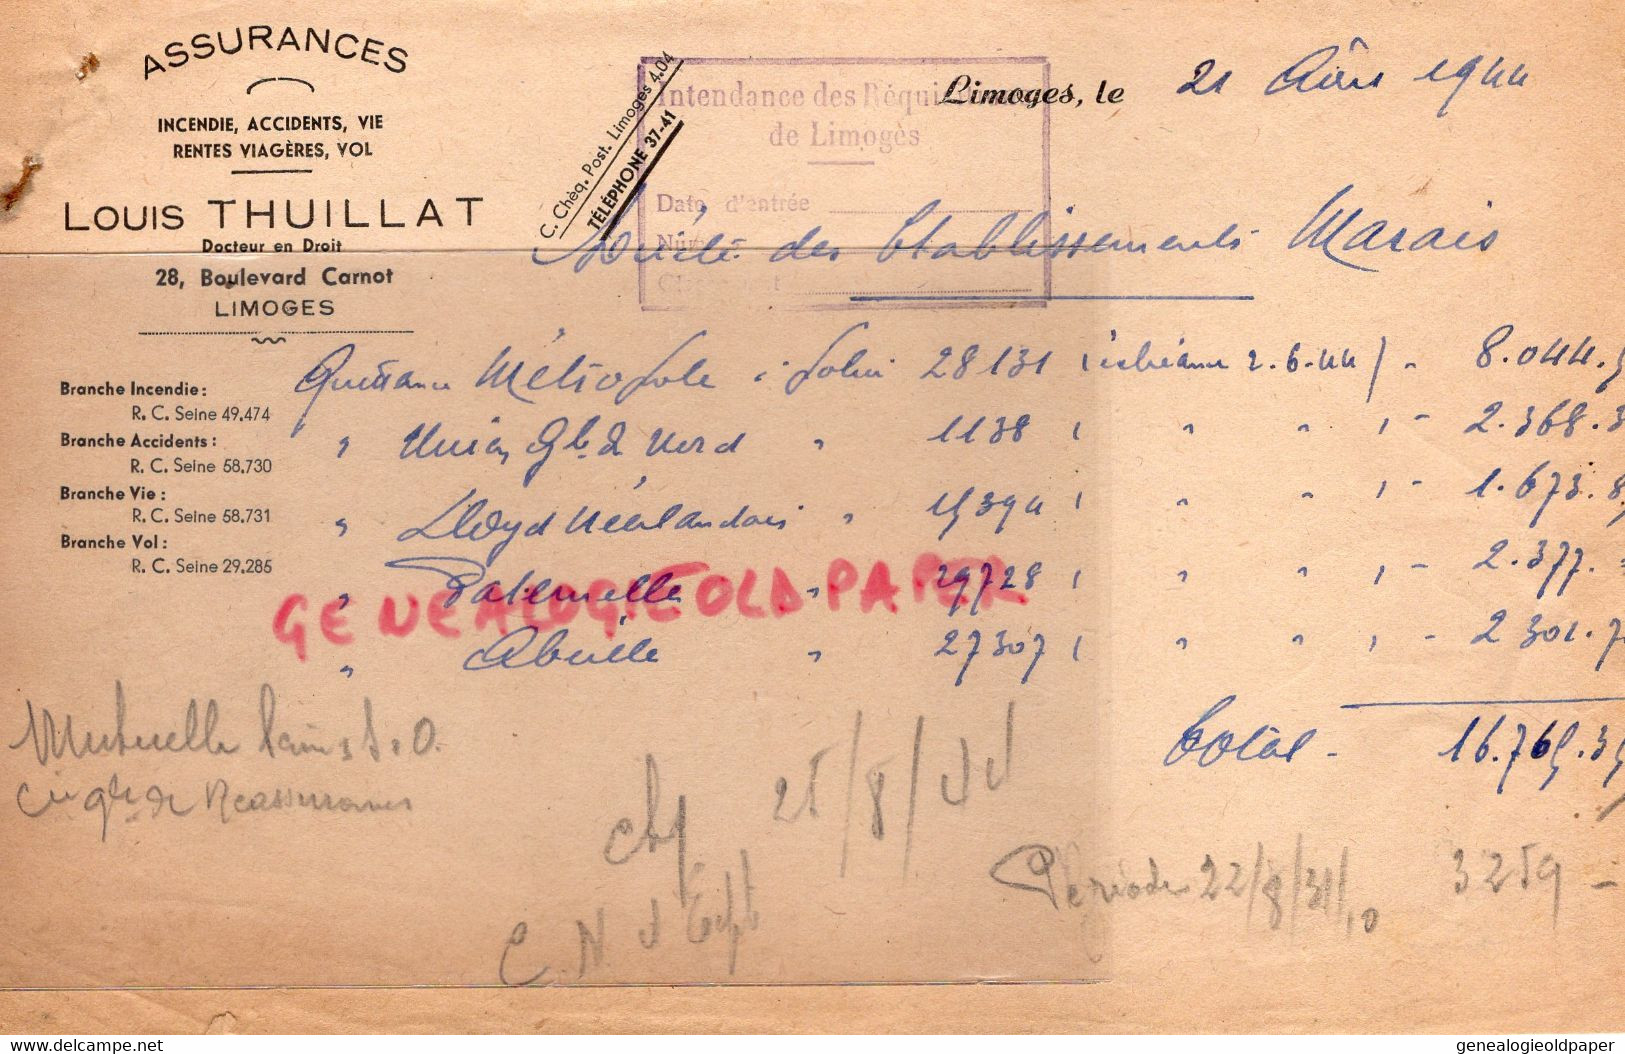 87- LIMOGES- FACTURE ASSURANCES LOUIS THUILLAT-DOCTEUR EN DROIT-28 BD CARNOT- 1944-RARE CACHET REQUISITIONS GUERRE - Banque & Assurance